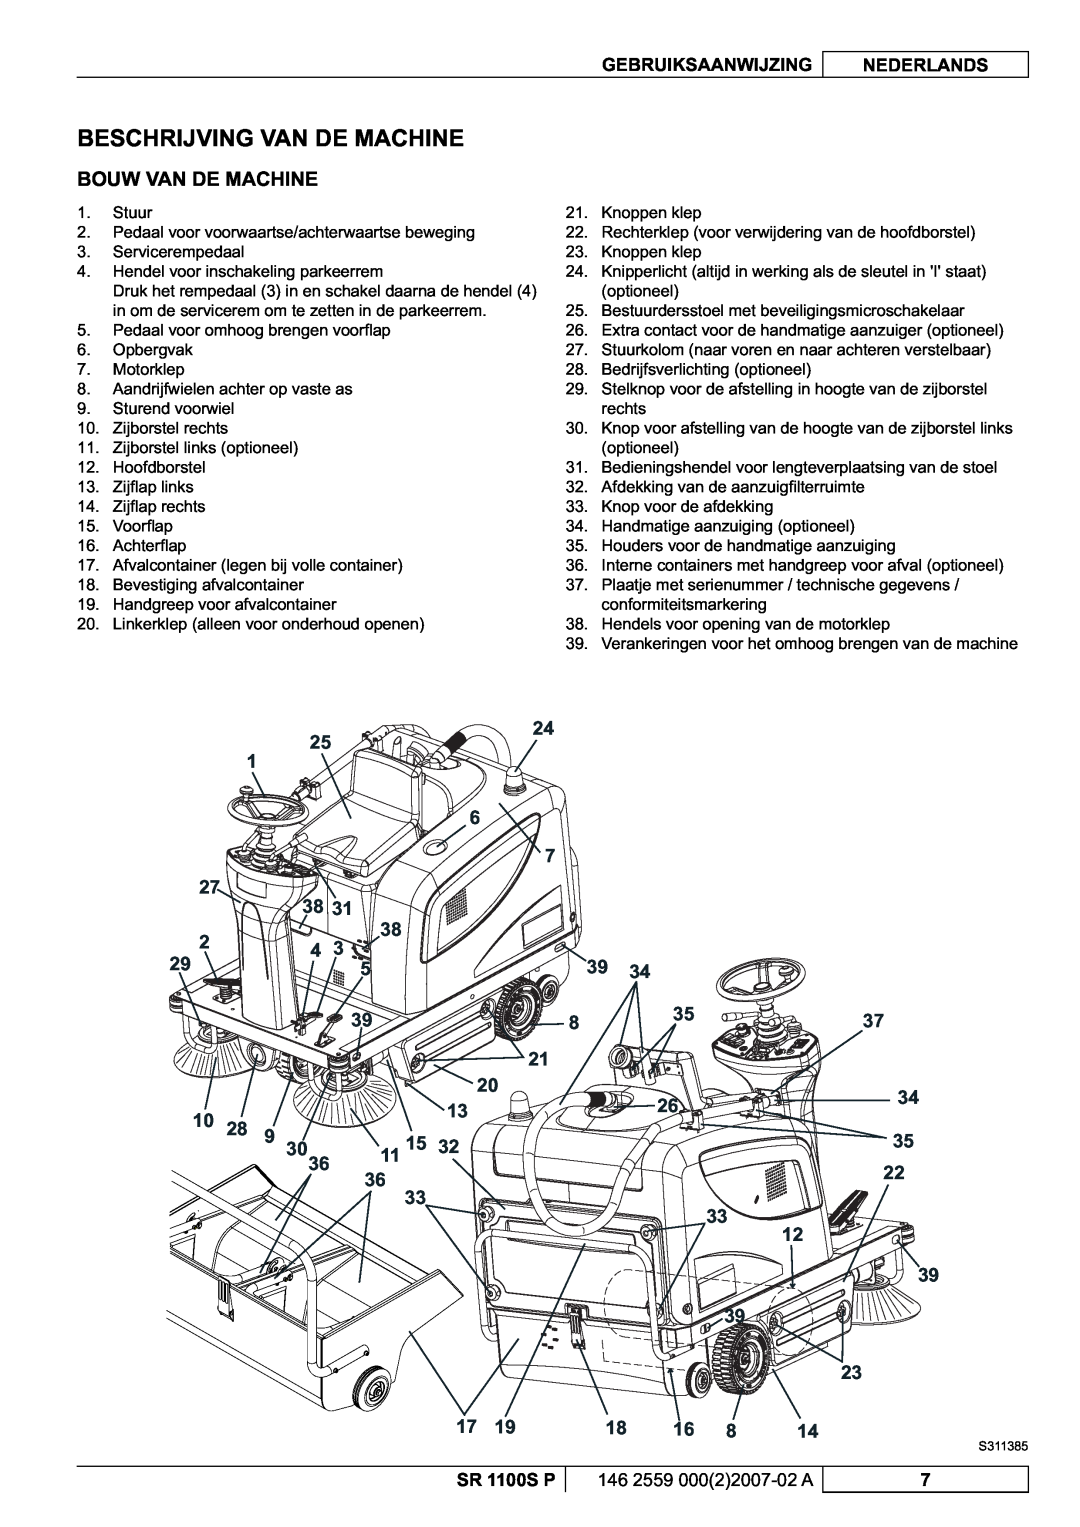 Nilfisk-Advance America SR 1100S manuel dutilisation Beschrijving Van De Machine, Bouw Van De Machine, 39 39 23 